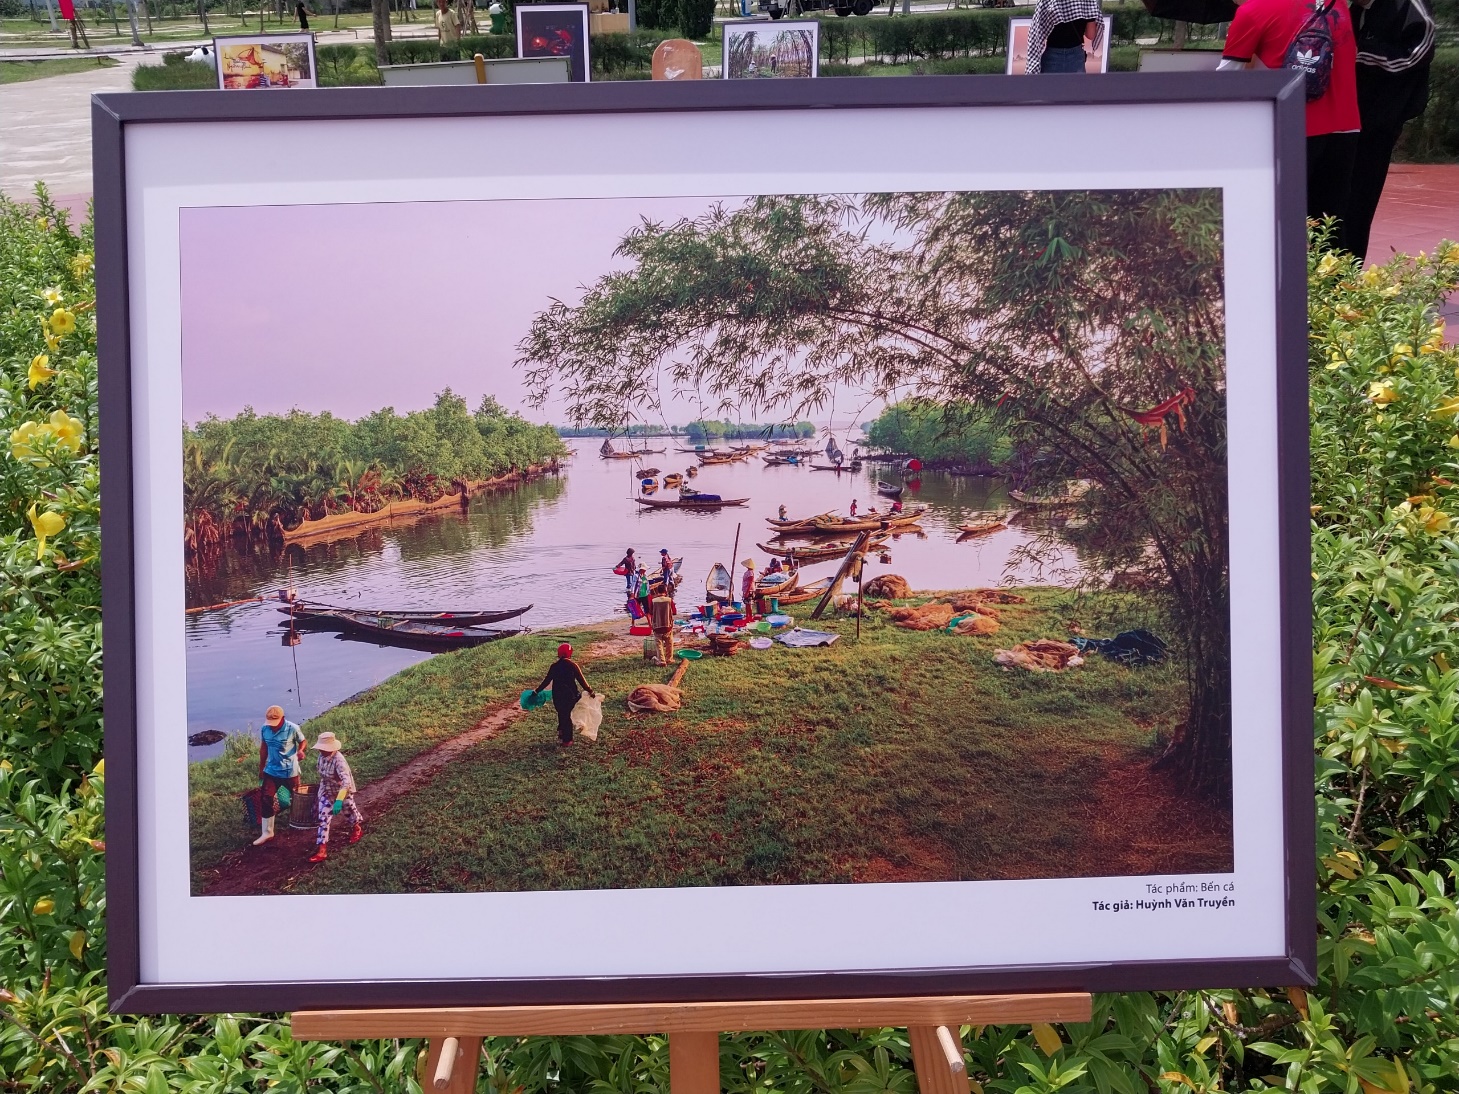 Chiêm ngưỡng nét đẹp vùng quê sông nước Quảng Điền qua những tấm ảnh - 12